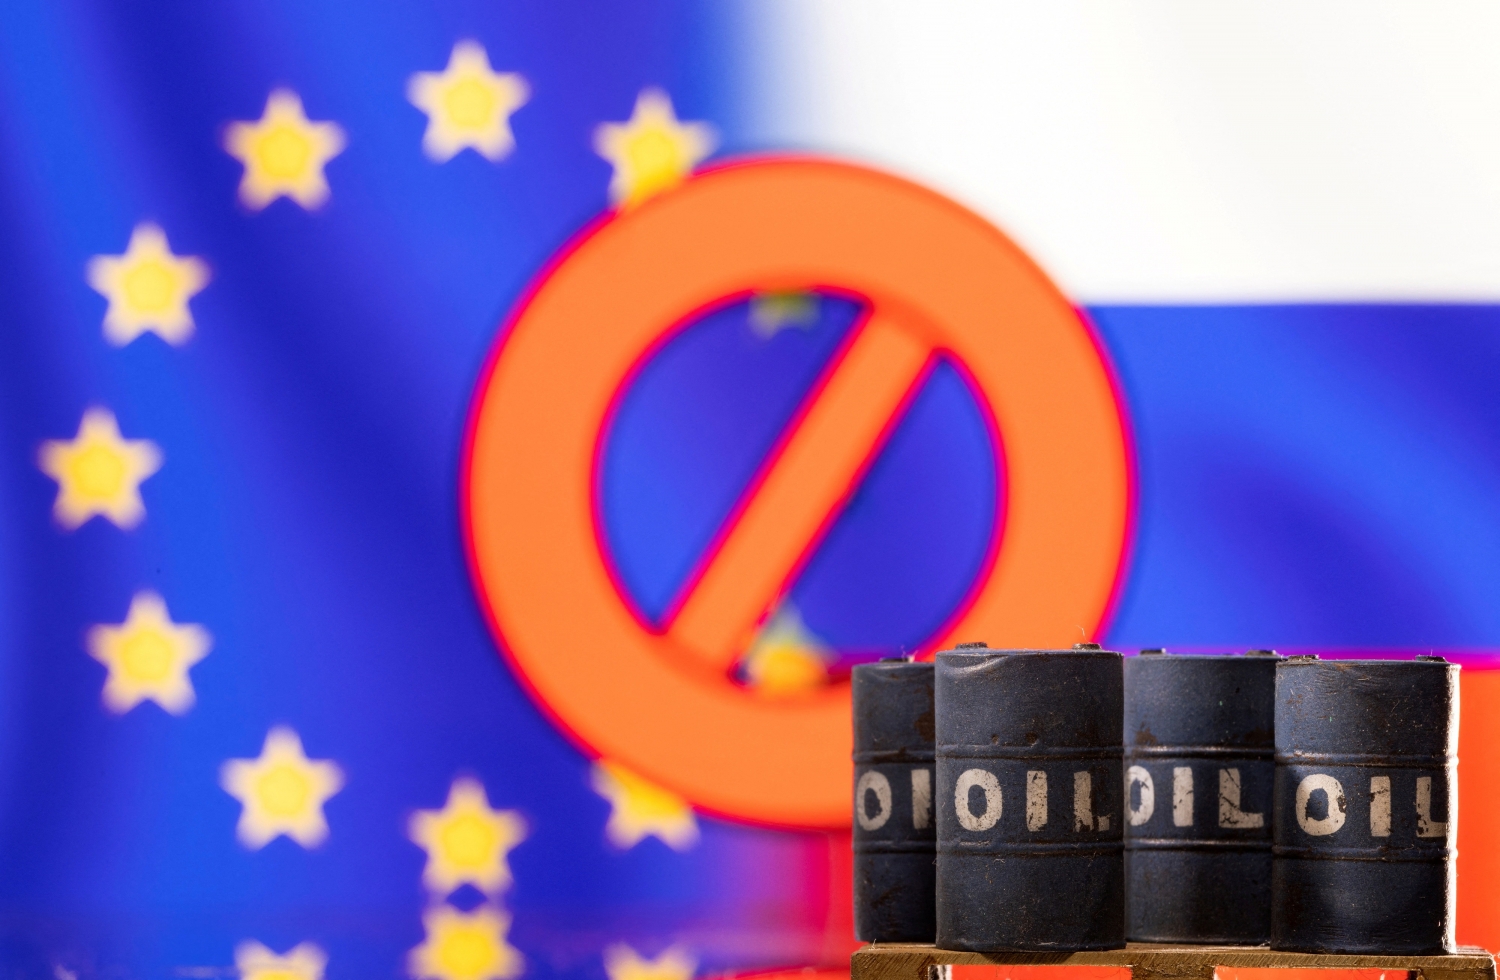 Khi lệnh cấm vận của EU chính thức có hiệu lực, Nga sẽ bán dầu thô ở đâu?